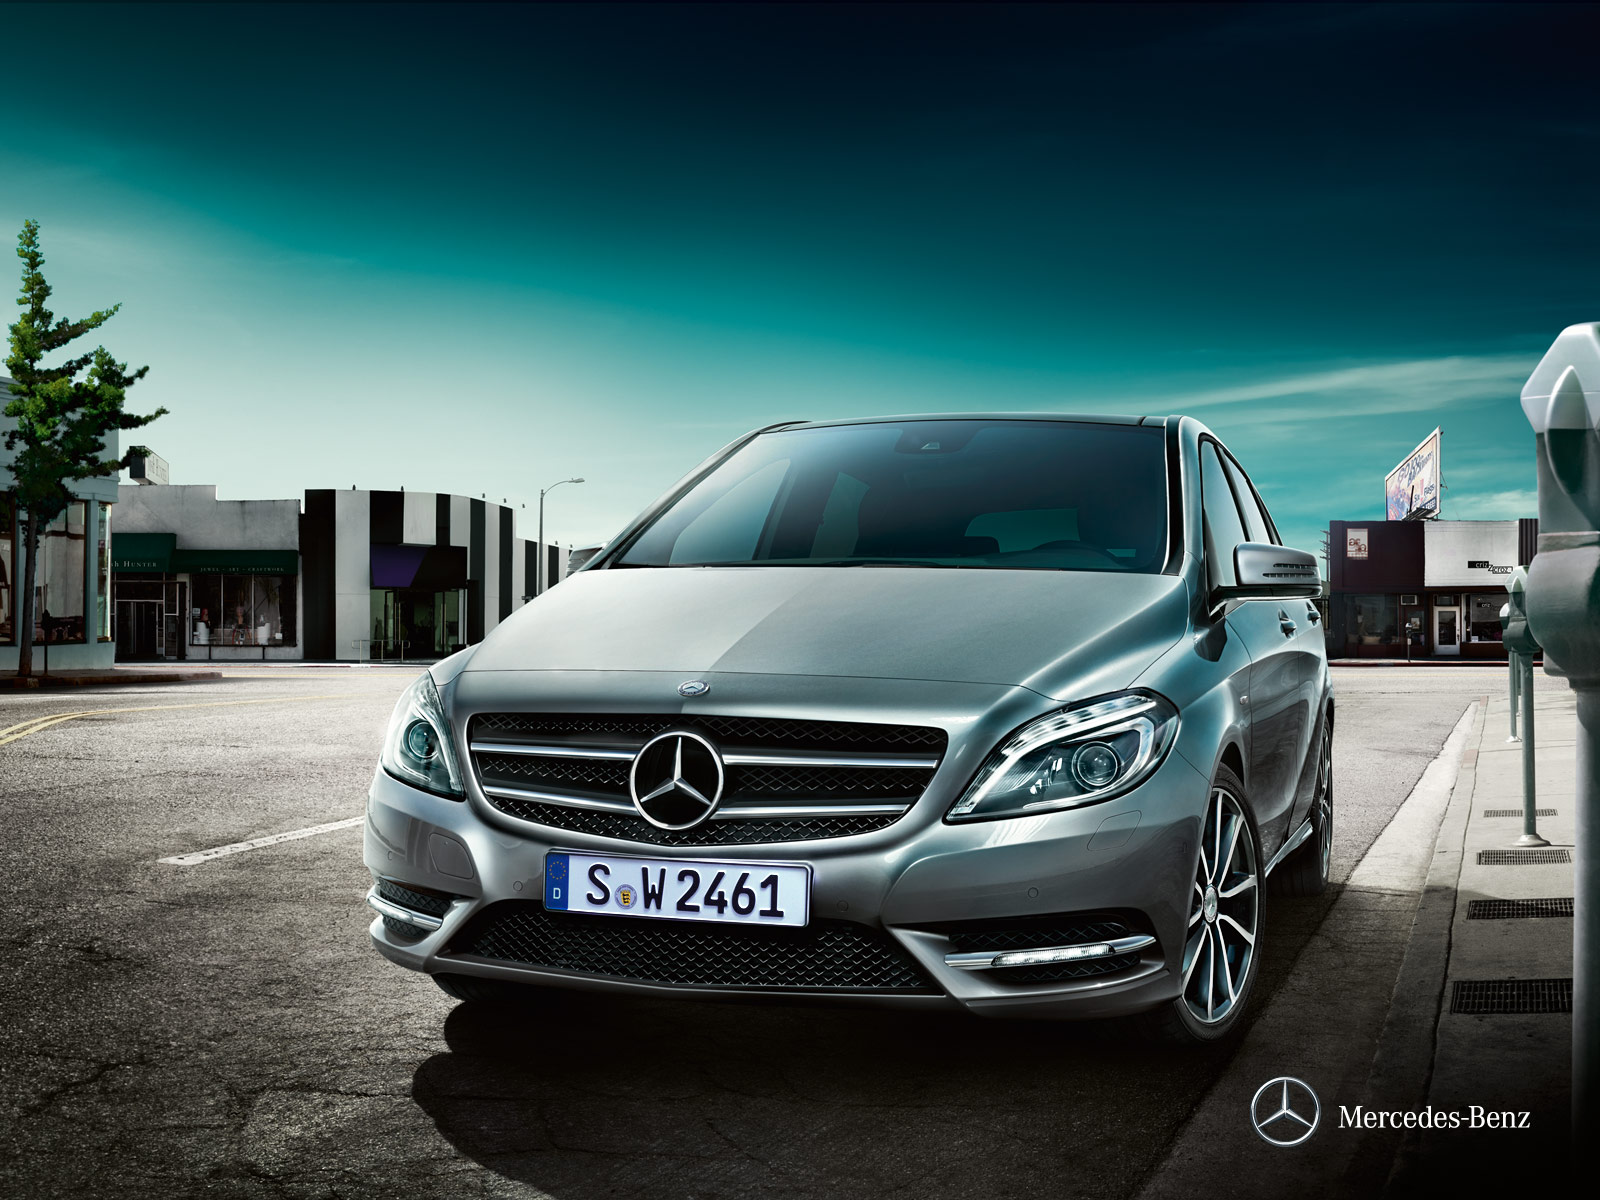 Mercedes-Benz Classe B: dimensioni, interni, motori, prezzi e